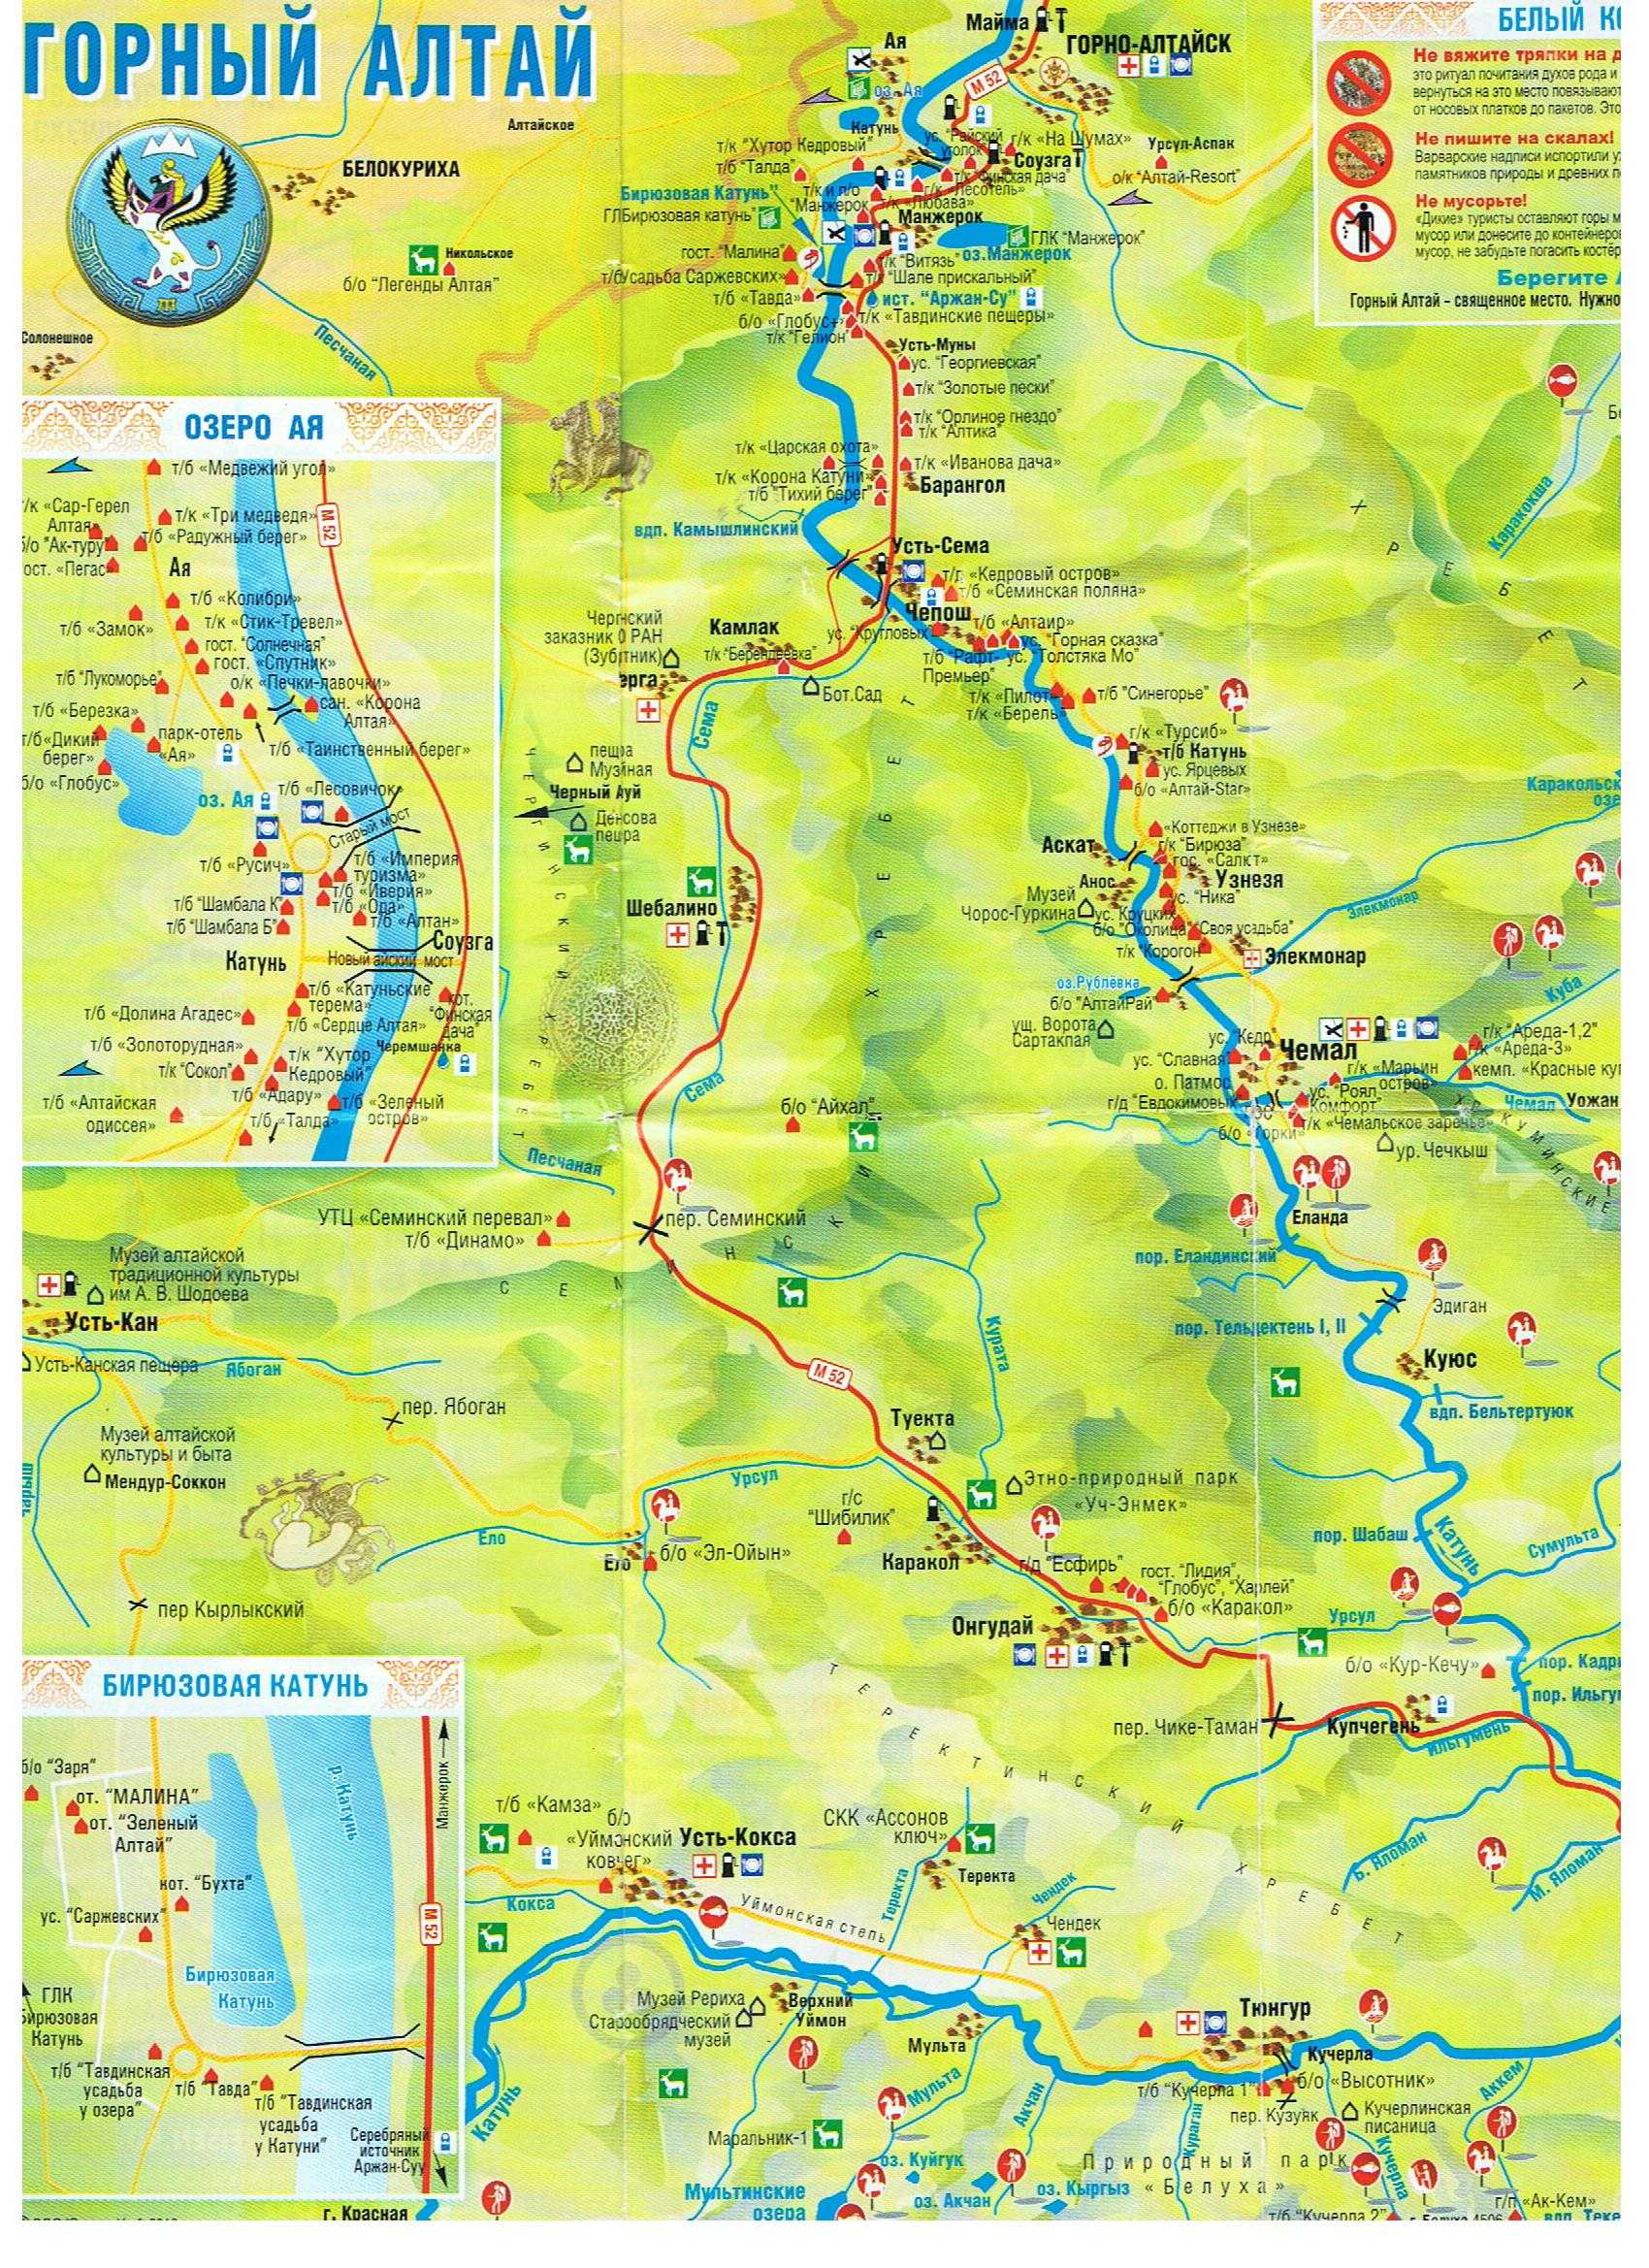 Алтайск чемал расстояние. Туристическая карта горного Алтая. Карта горного Алтая с достопримечательностями. Карта горного Алтая с турбазами и достопримечательности. Карта горного Алтая с базами.